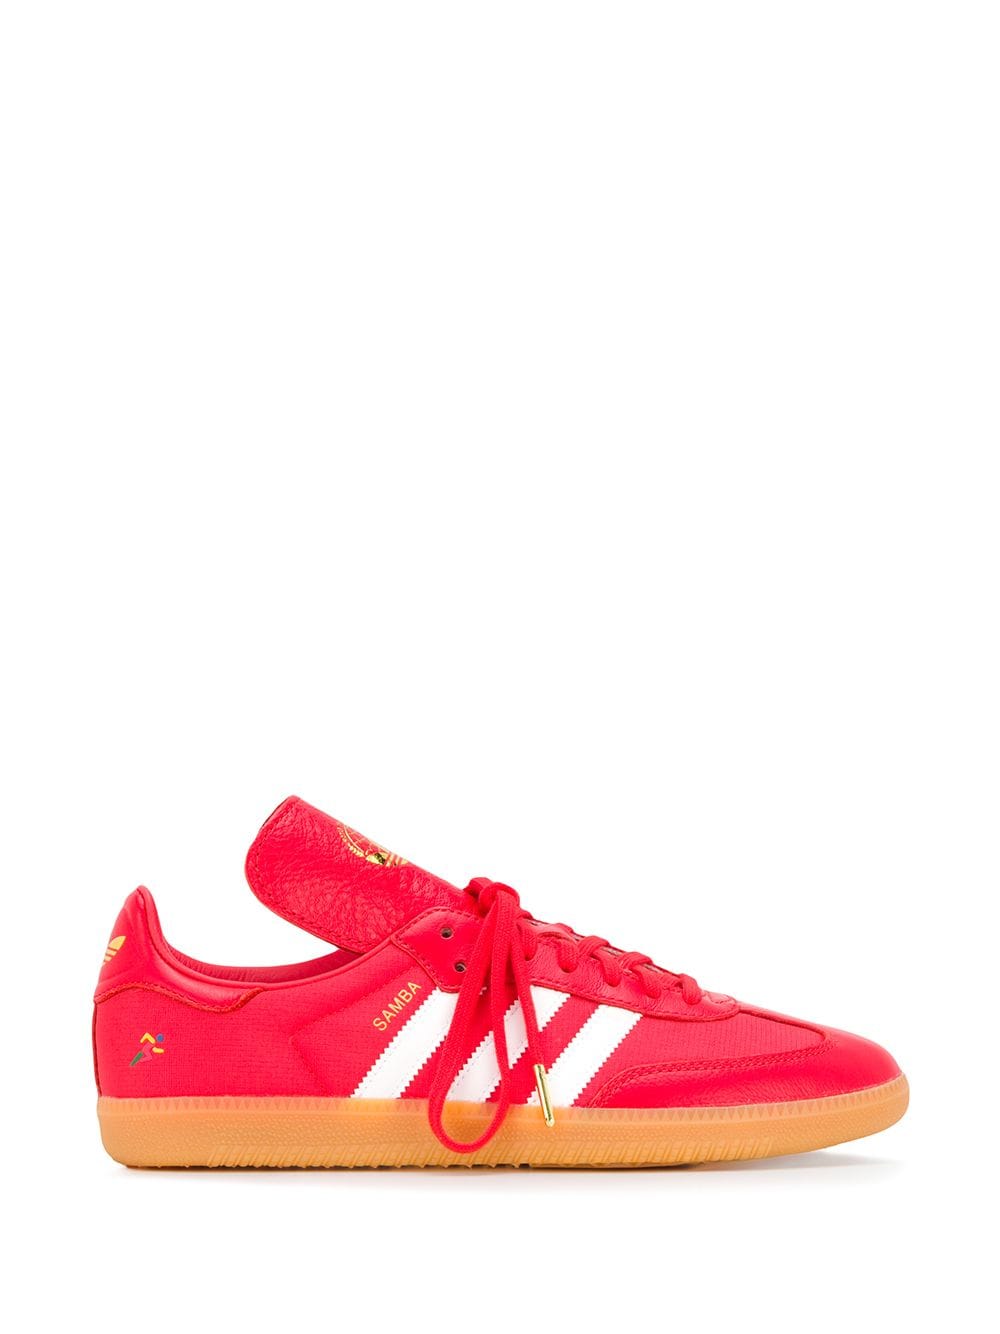 red samba trainers